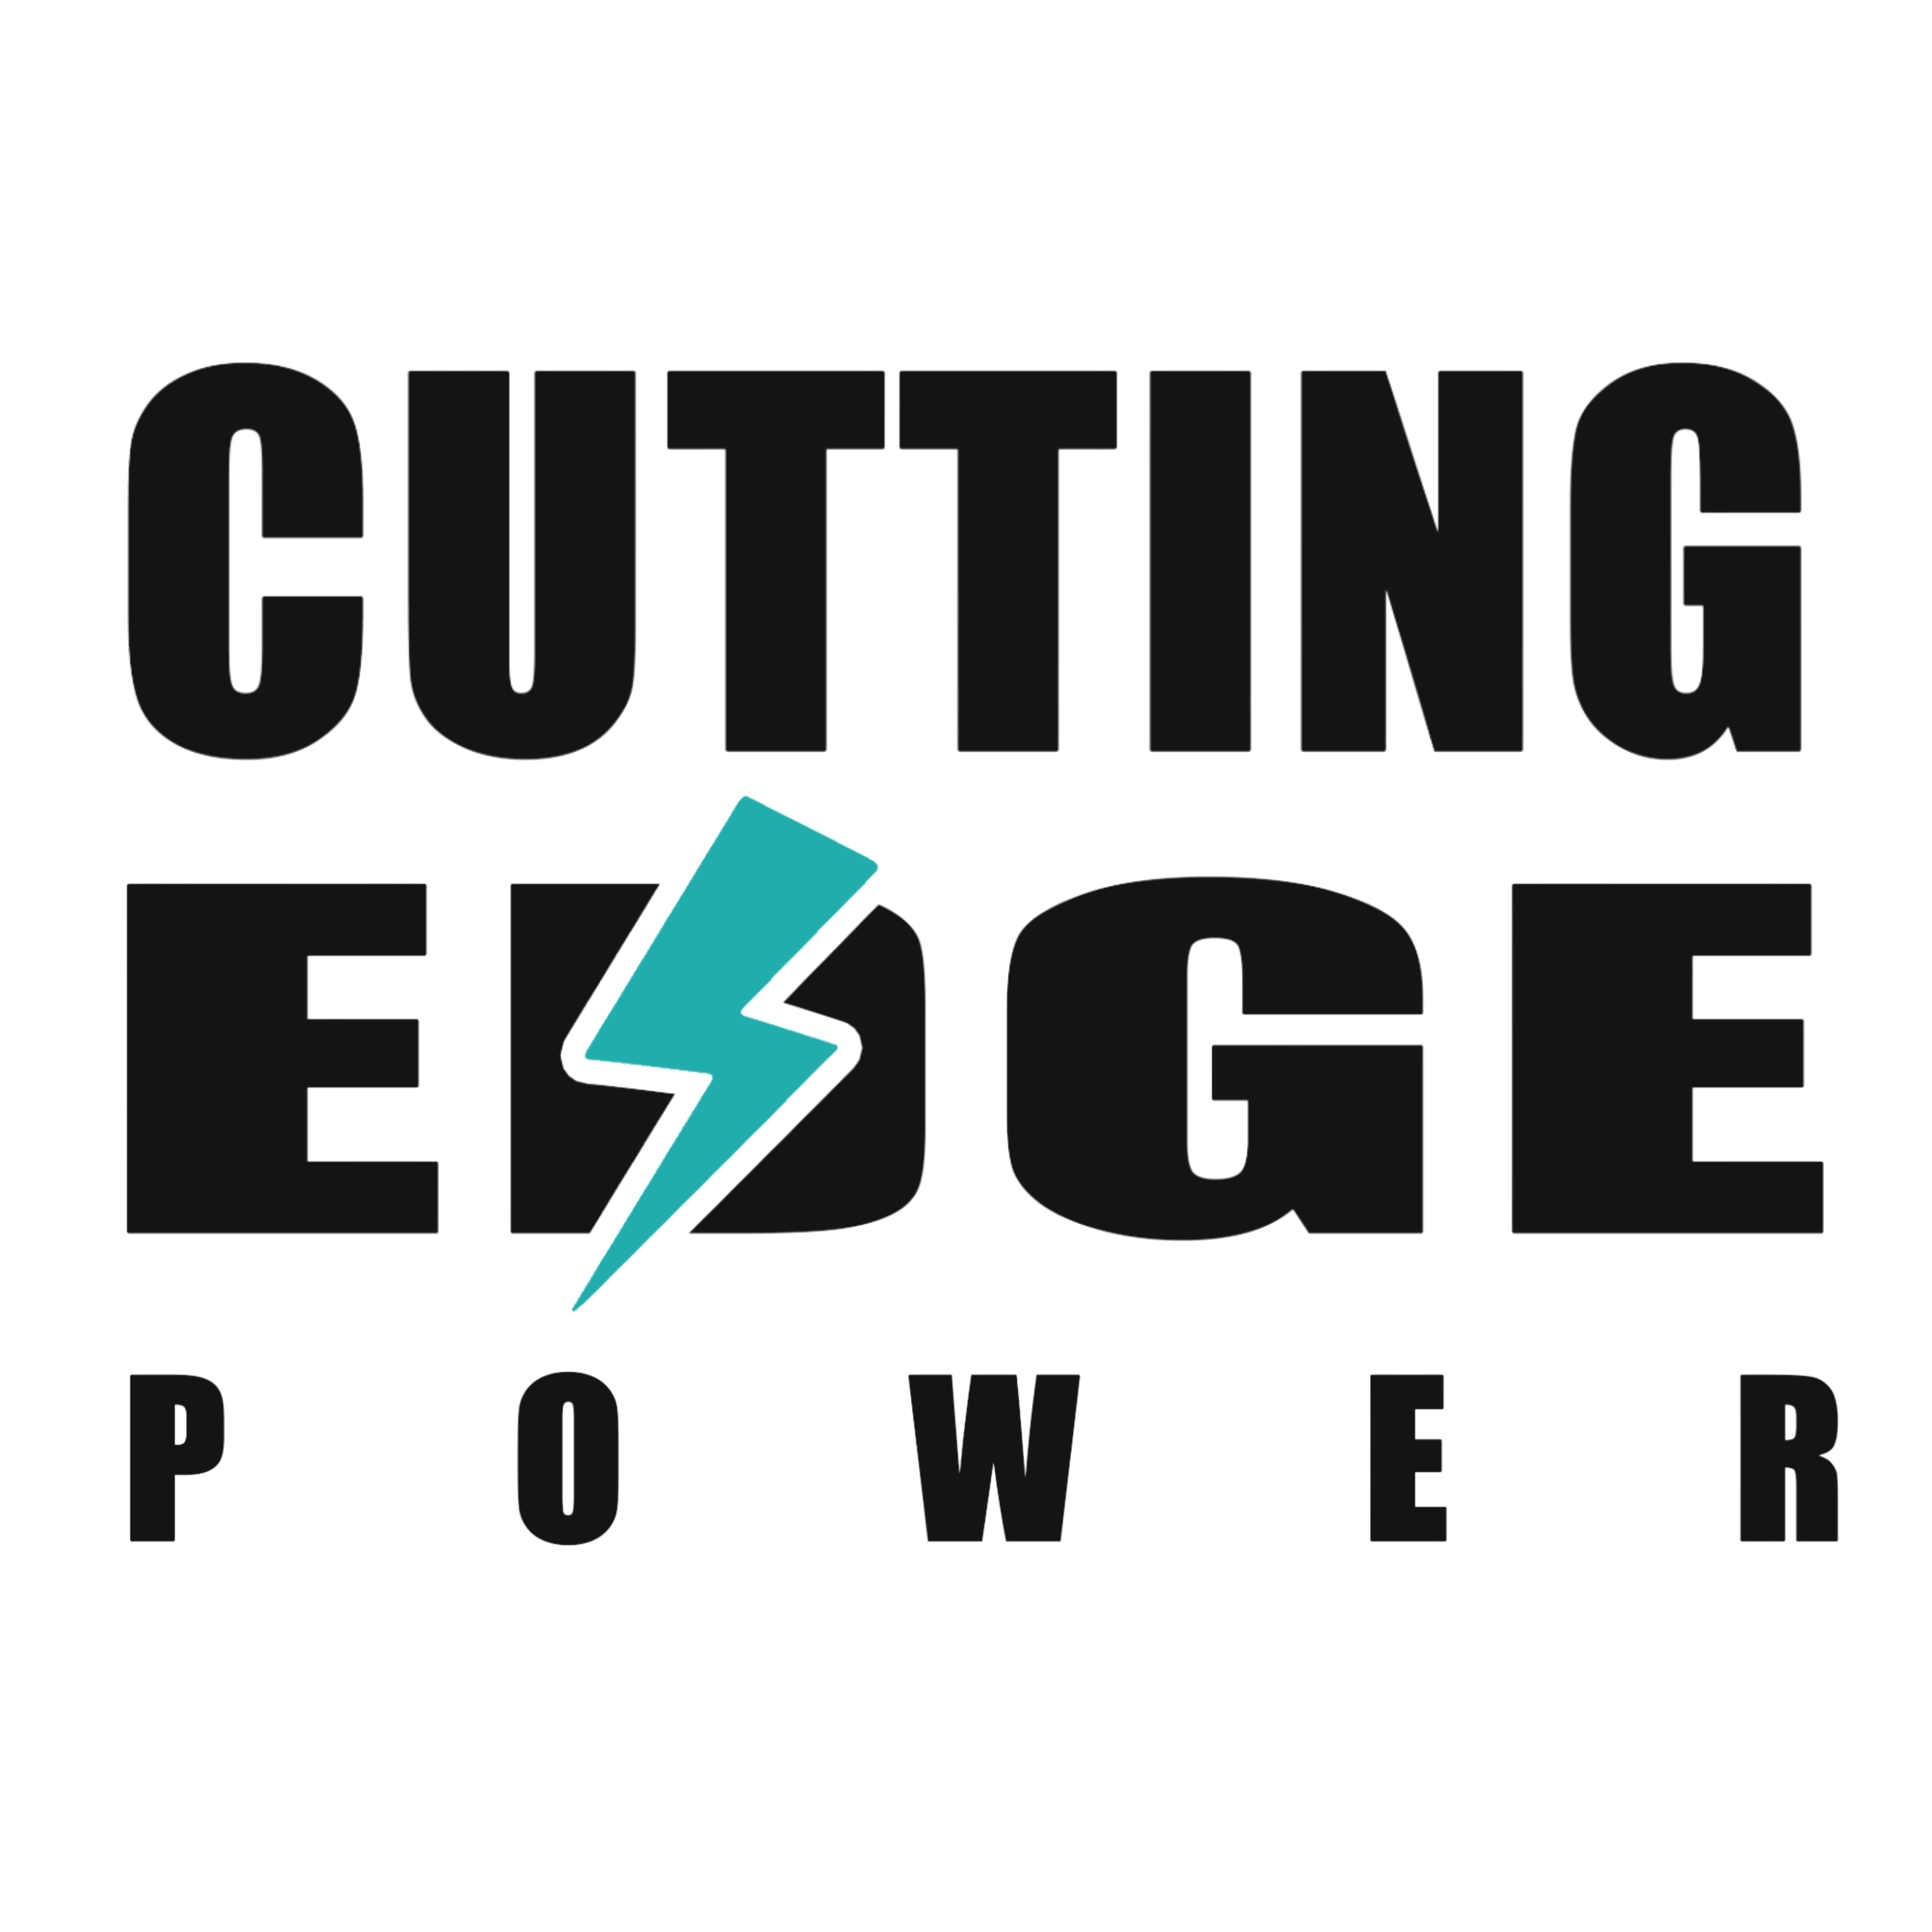 cuttingedgepower.com